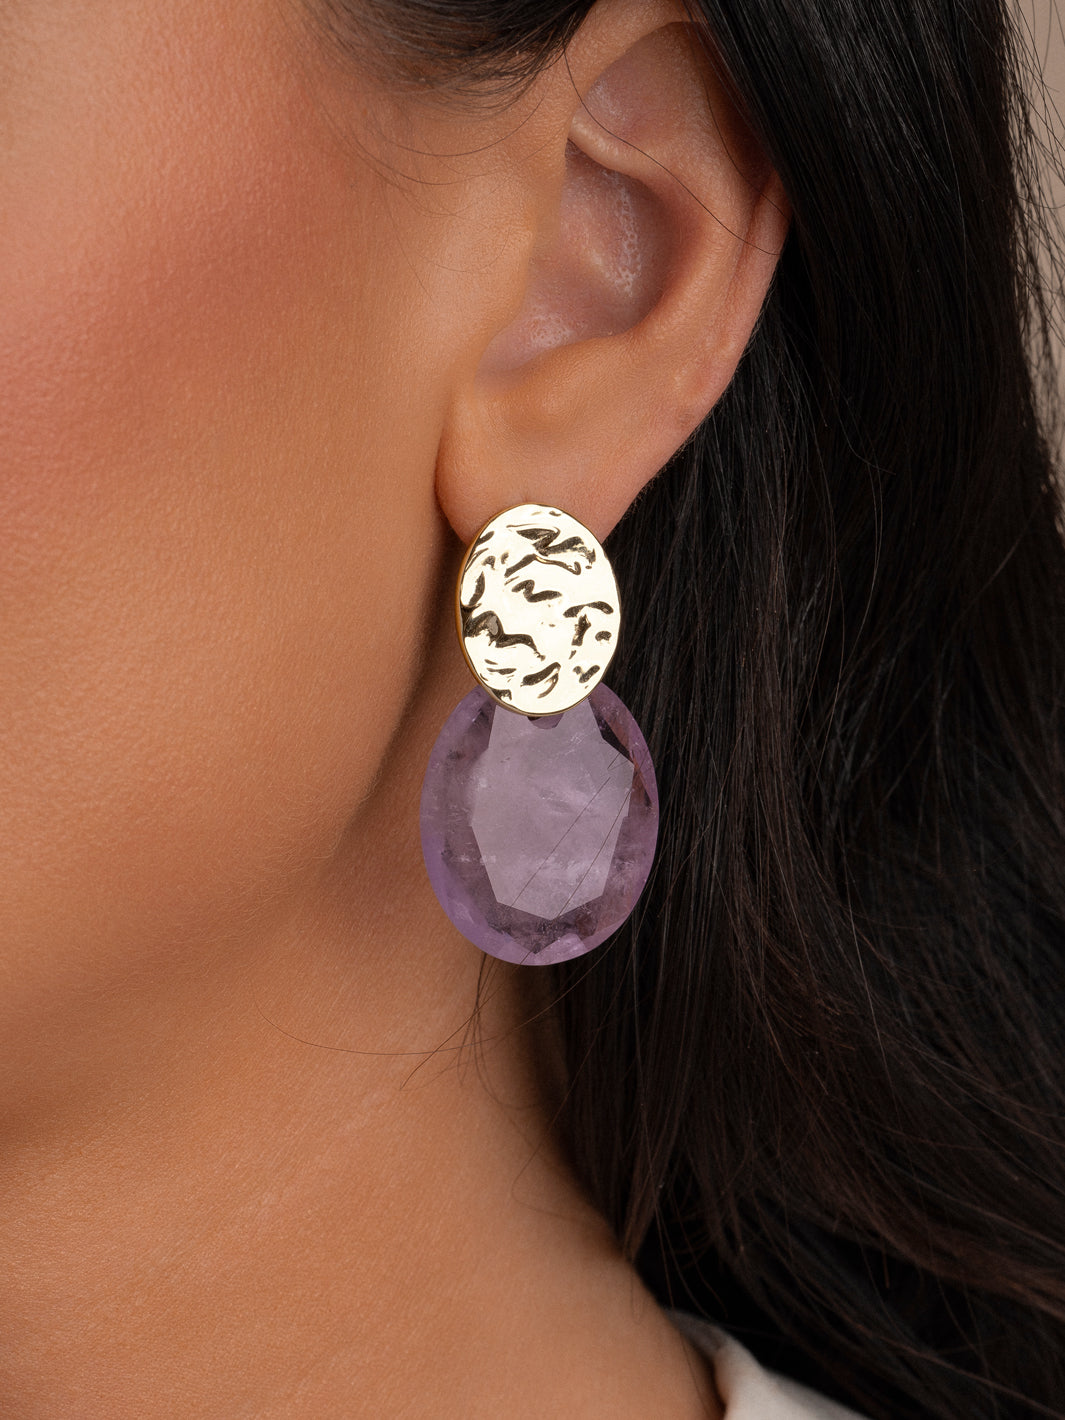 Echte edelstenen voor echte schoonheid: Amethyst Large Oval aan Sparkling oorbellen